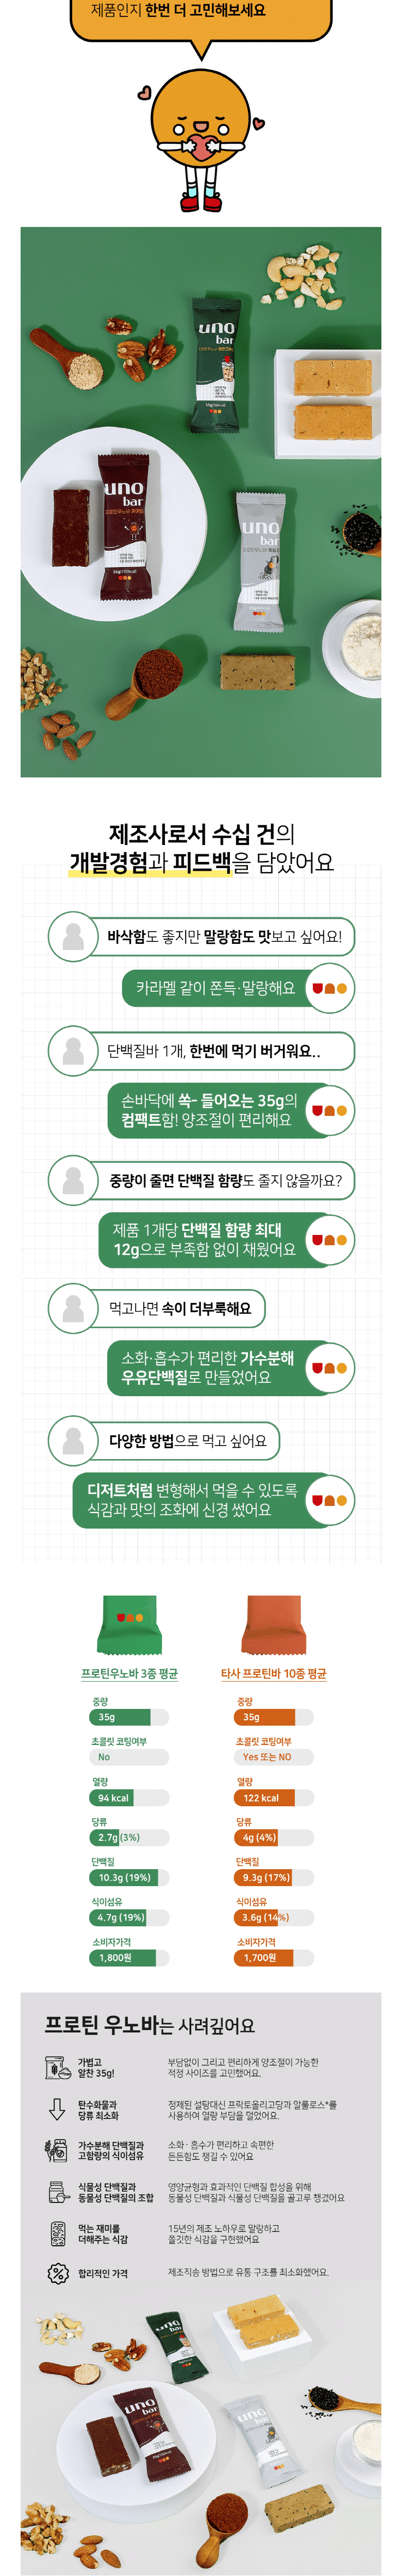 韓國食品-[프로틴 우노바] 피칸그레인 35g